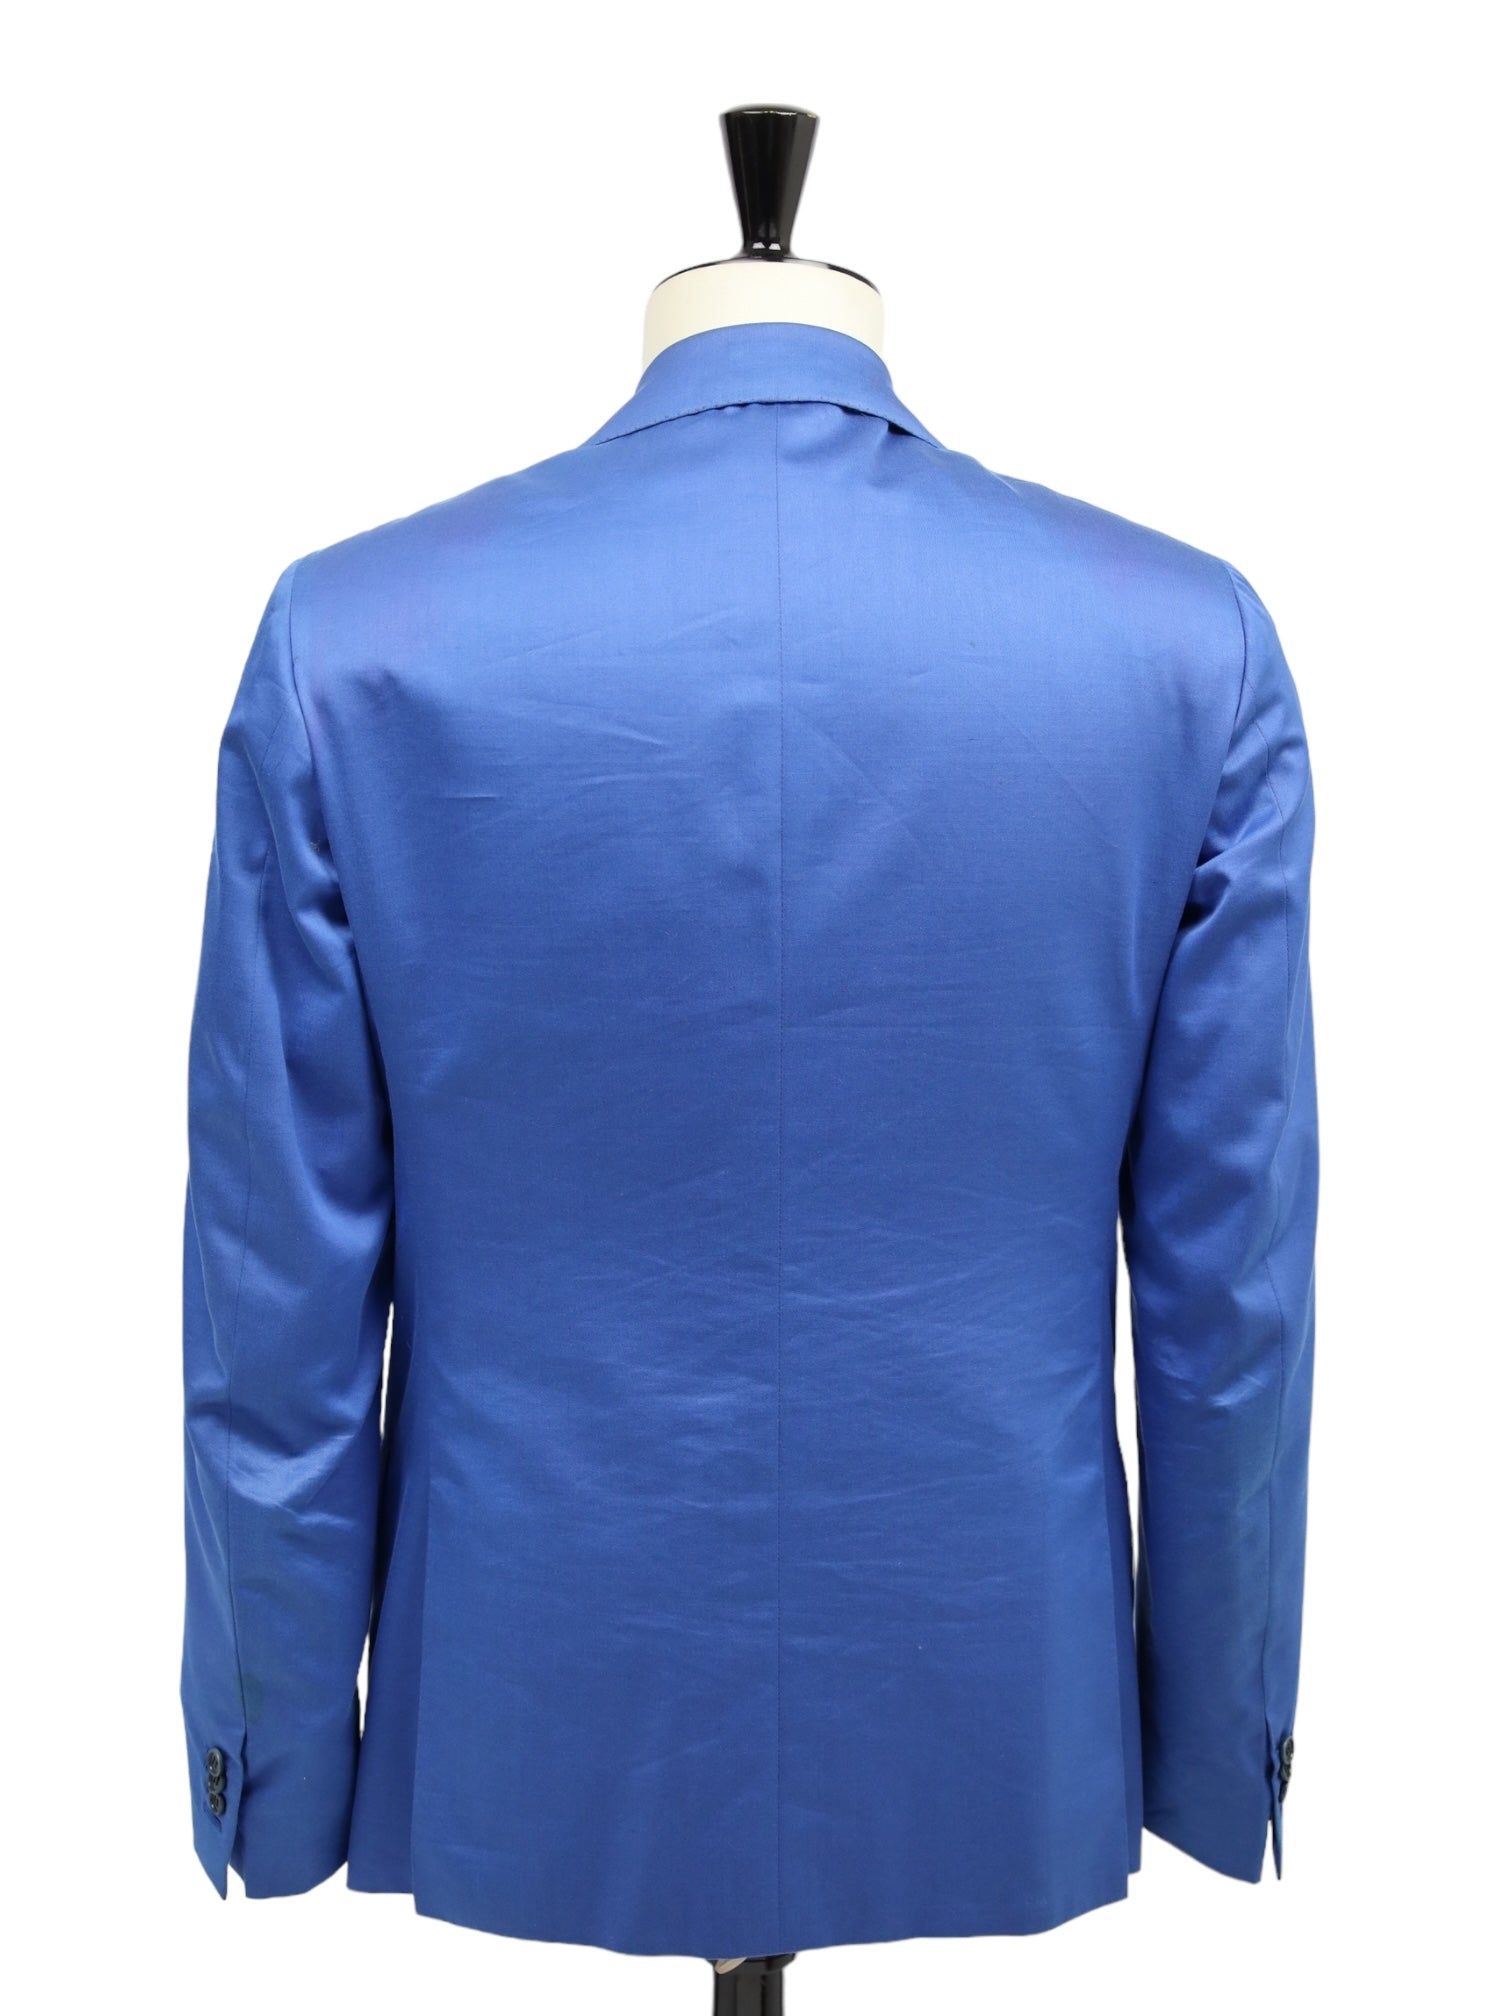 Kiton Napolitaans blauw jasje van katoen, kasjmier en zijde 